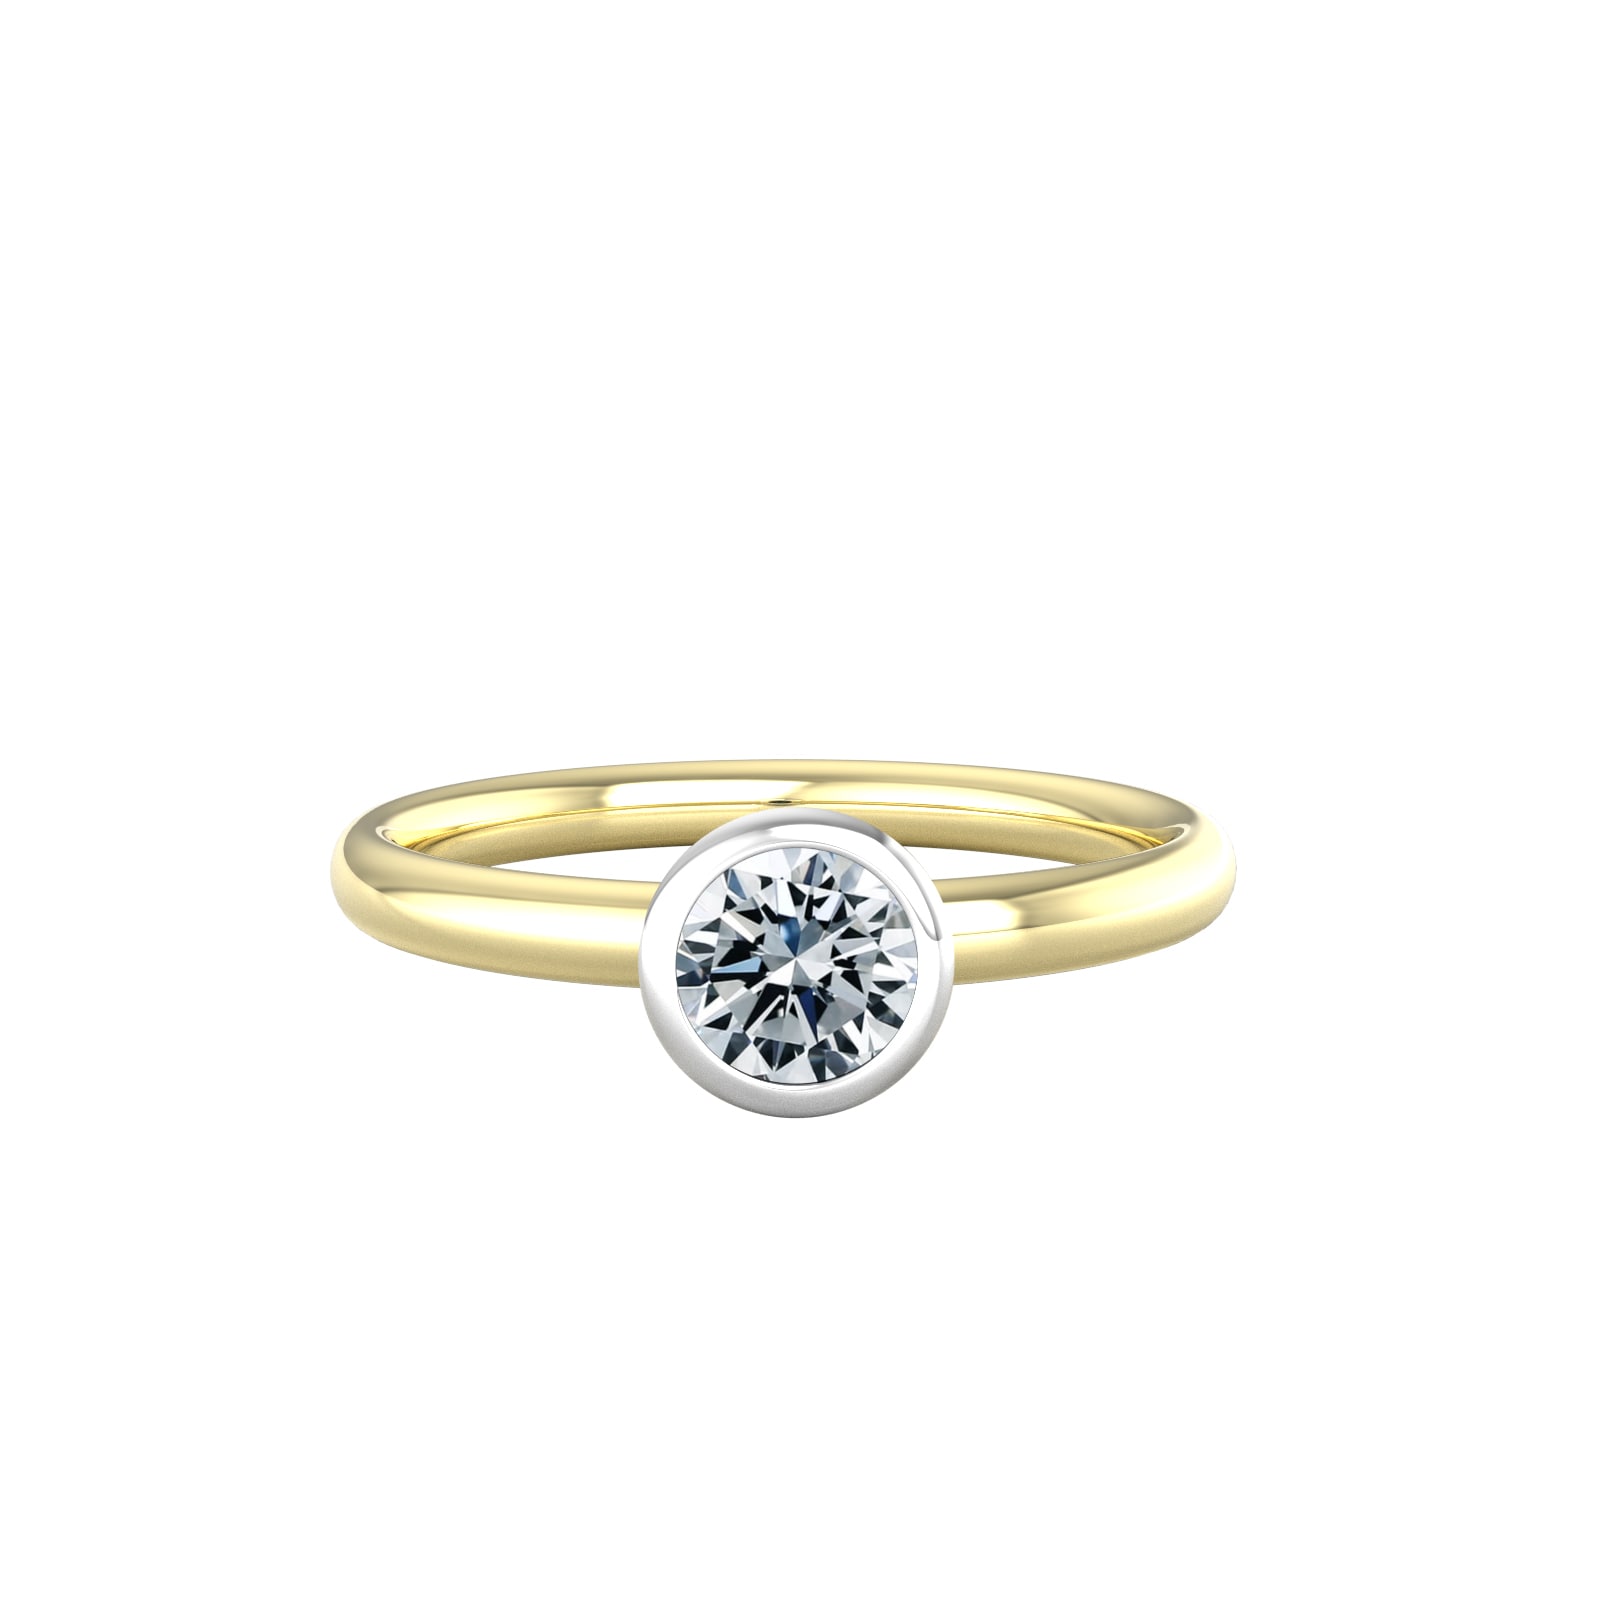 18ct White & Yellow Gold 0.60ct Diamond Ring